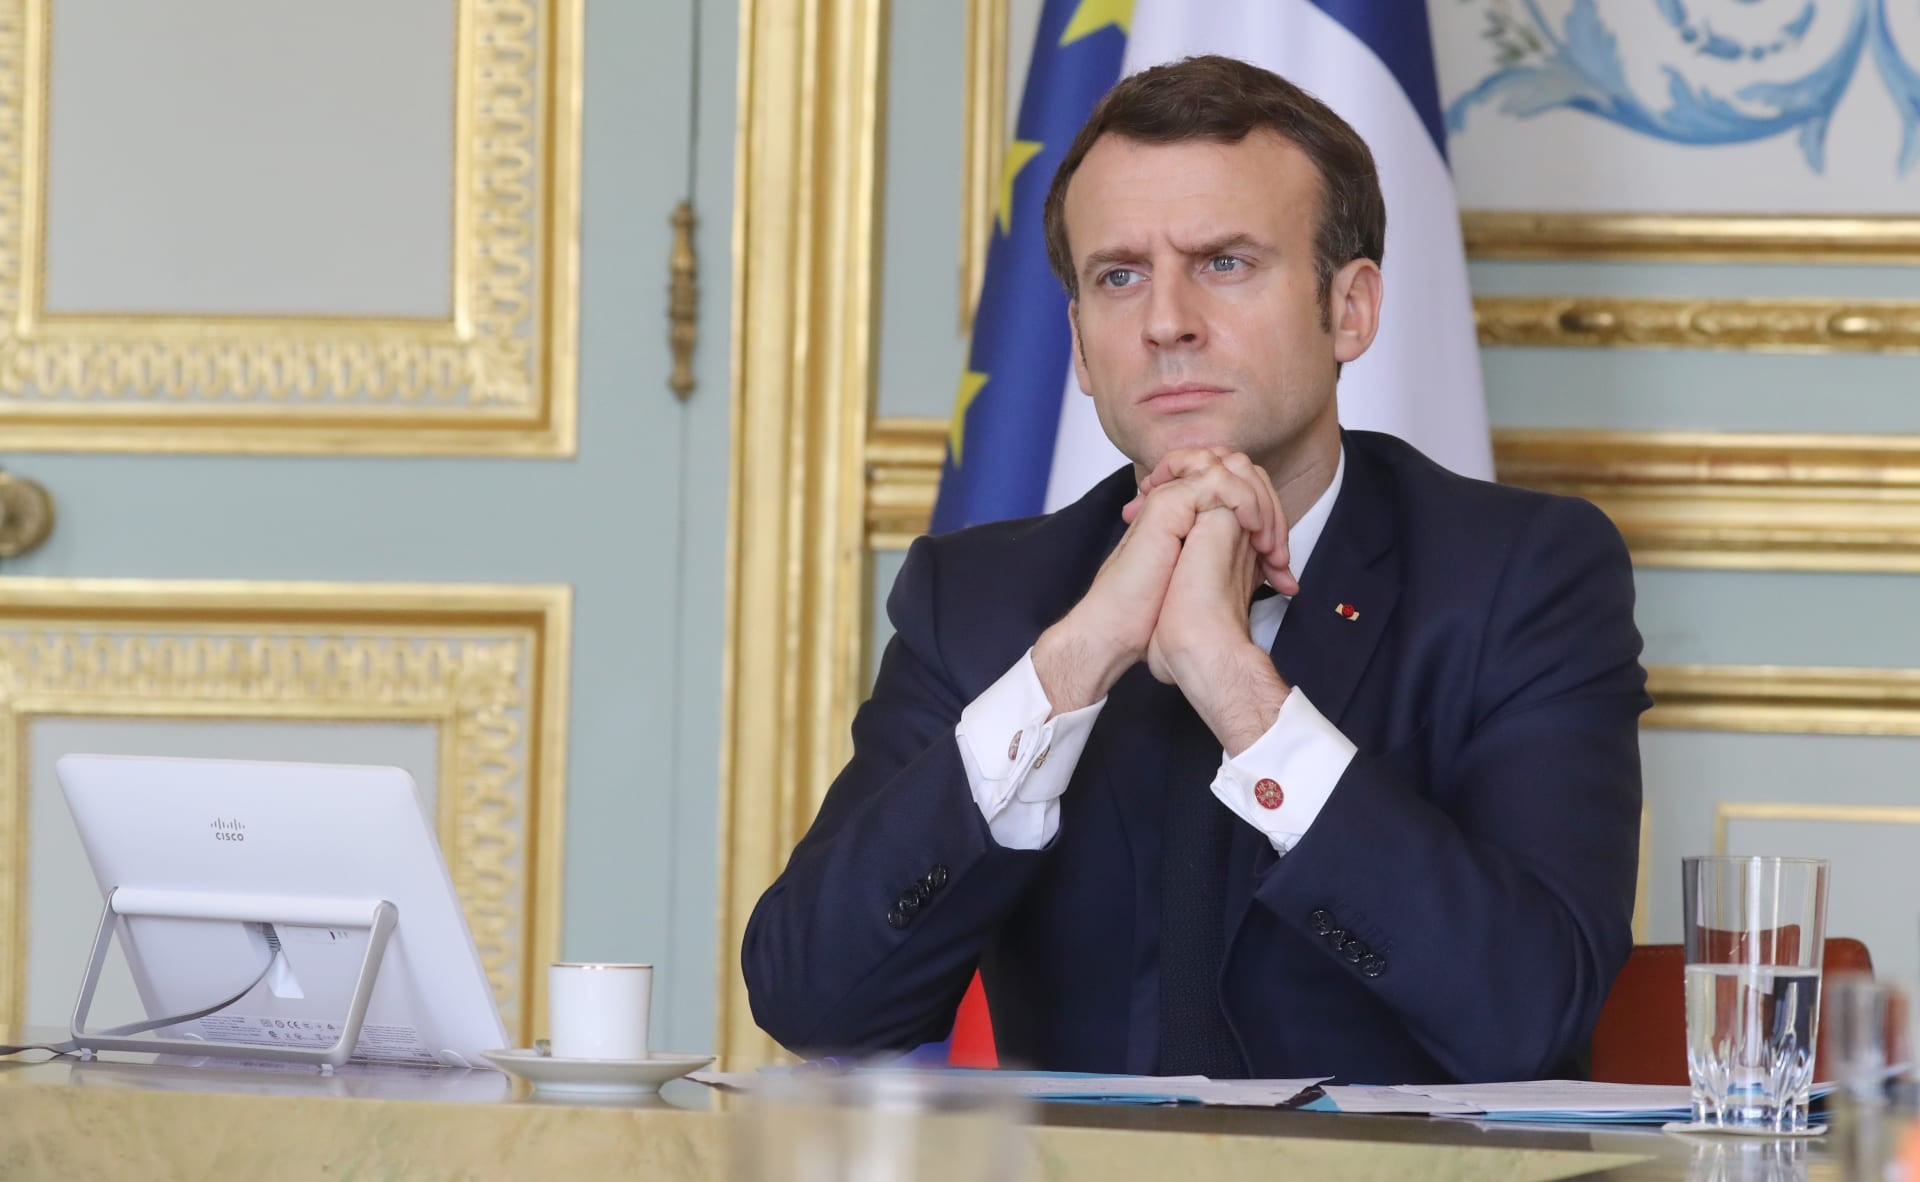 من-هي-زوجة-ماكرون-رئيس-فرنسا-الحالي.jpg